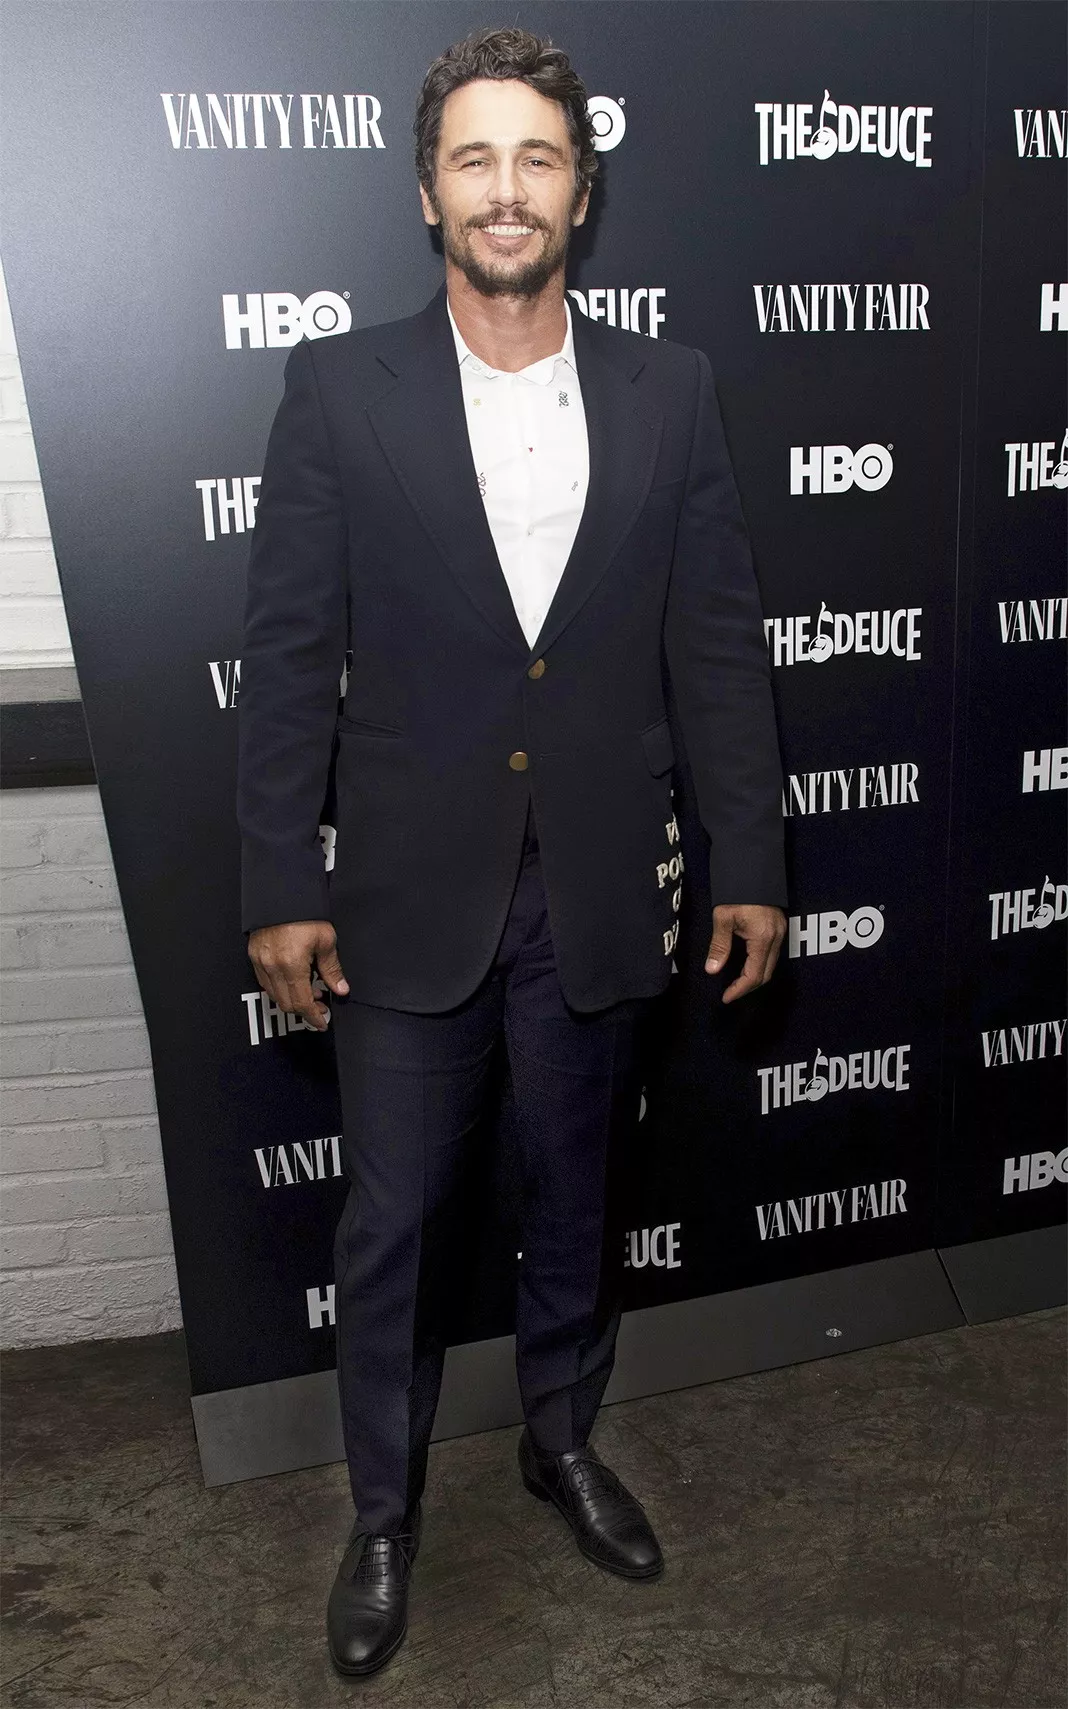 Джеймс Франко на показе фильма «Двойка» в Нью-Йорке, 5 сентября 2019 г.